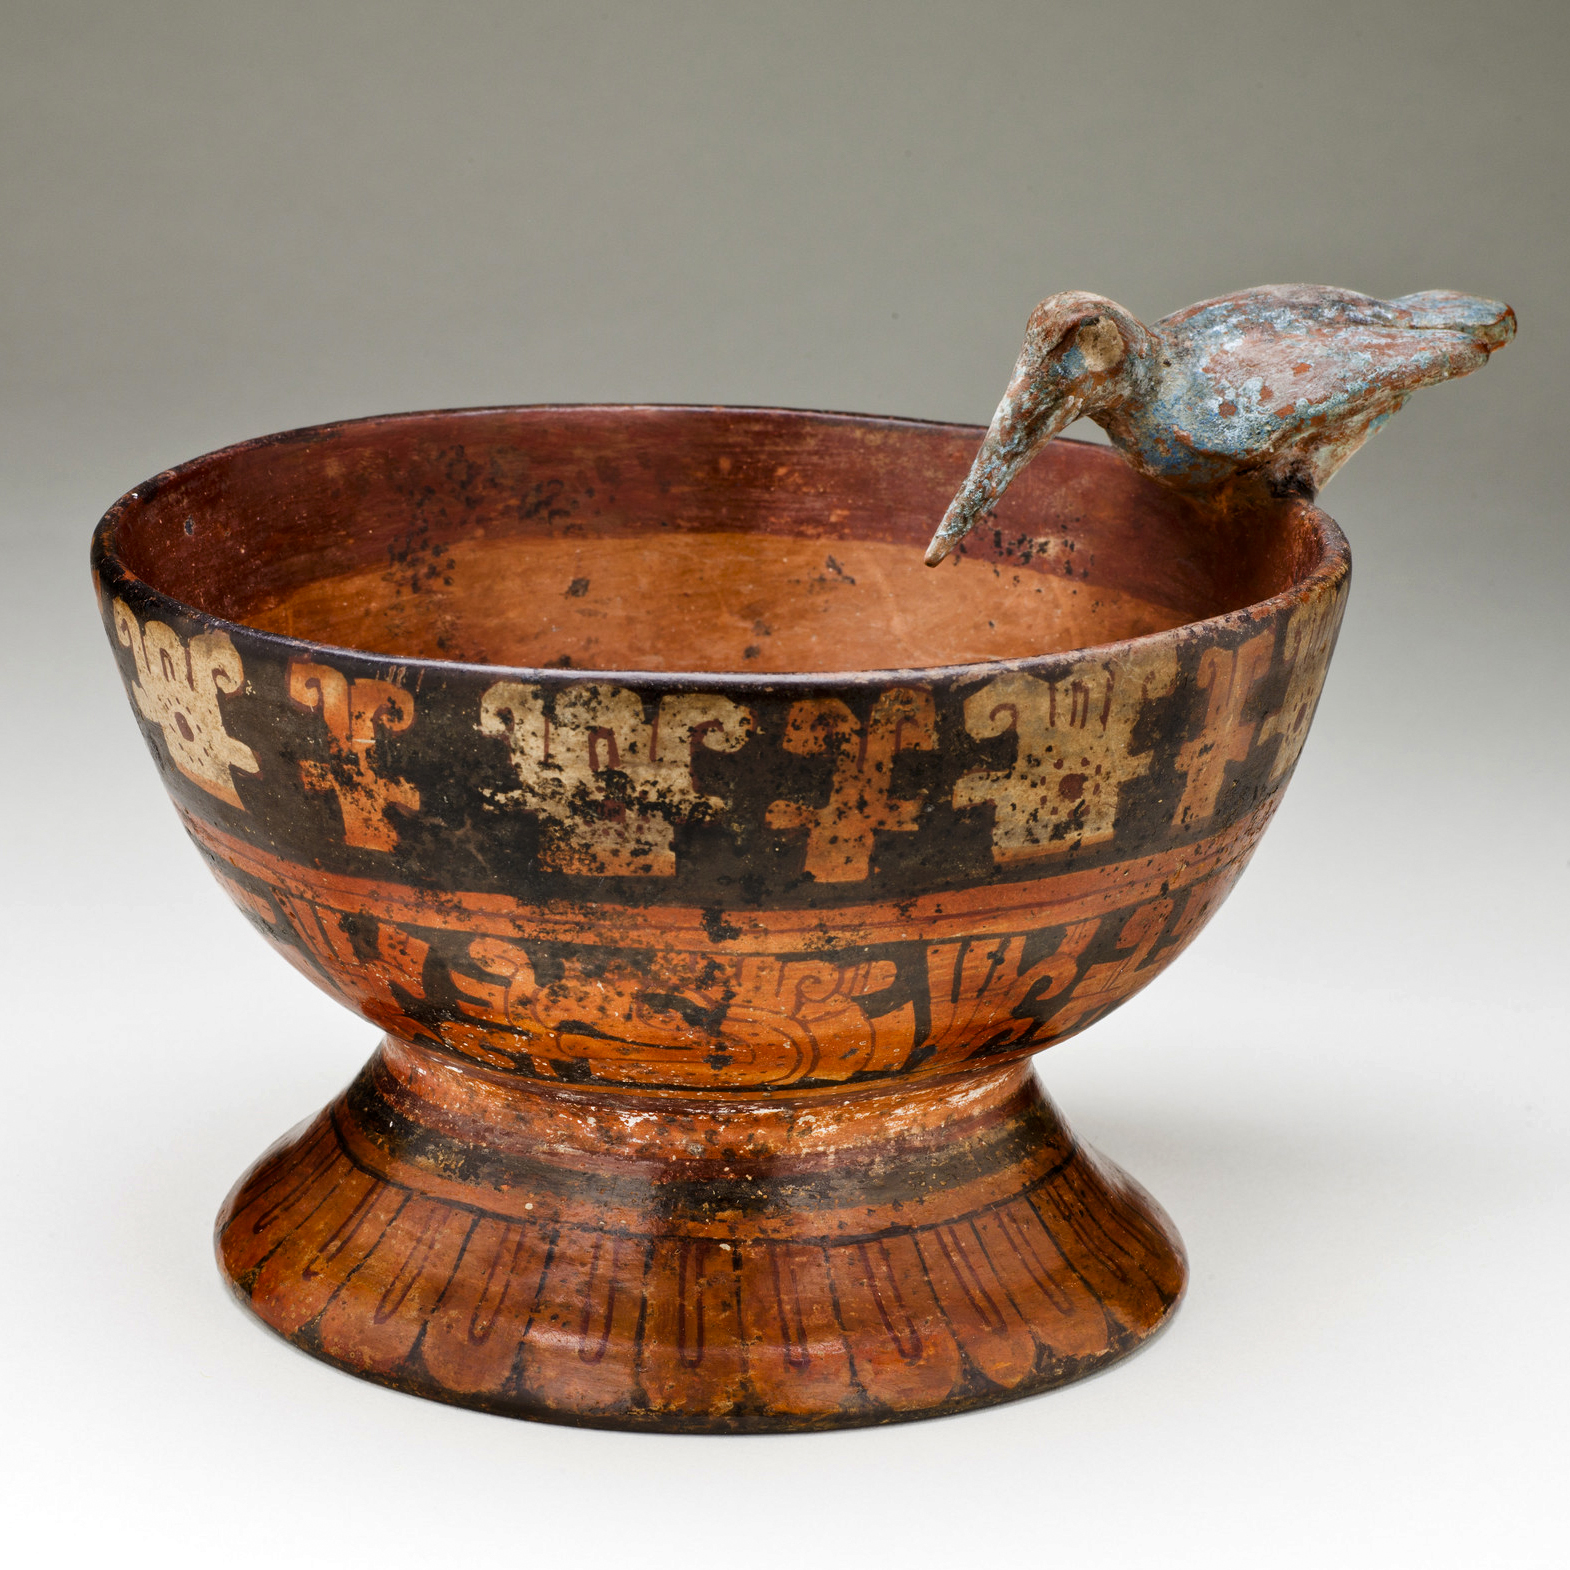 Чаша с погремушкой в виде колибри. Мексика, 1300-1500 гг. н.э. Коллекция Los Angeles County Museum of Art.